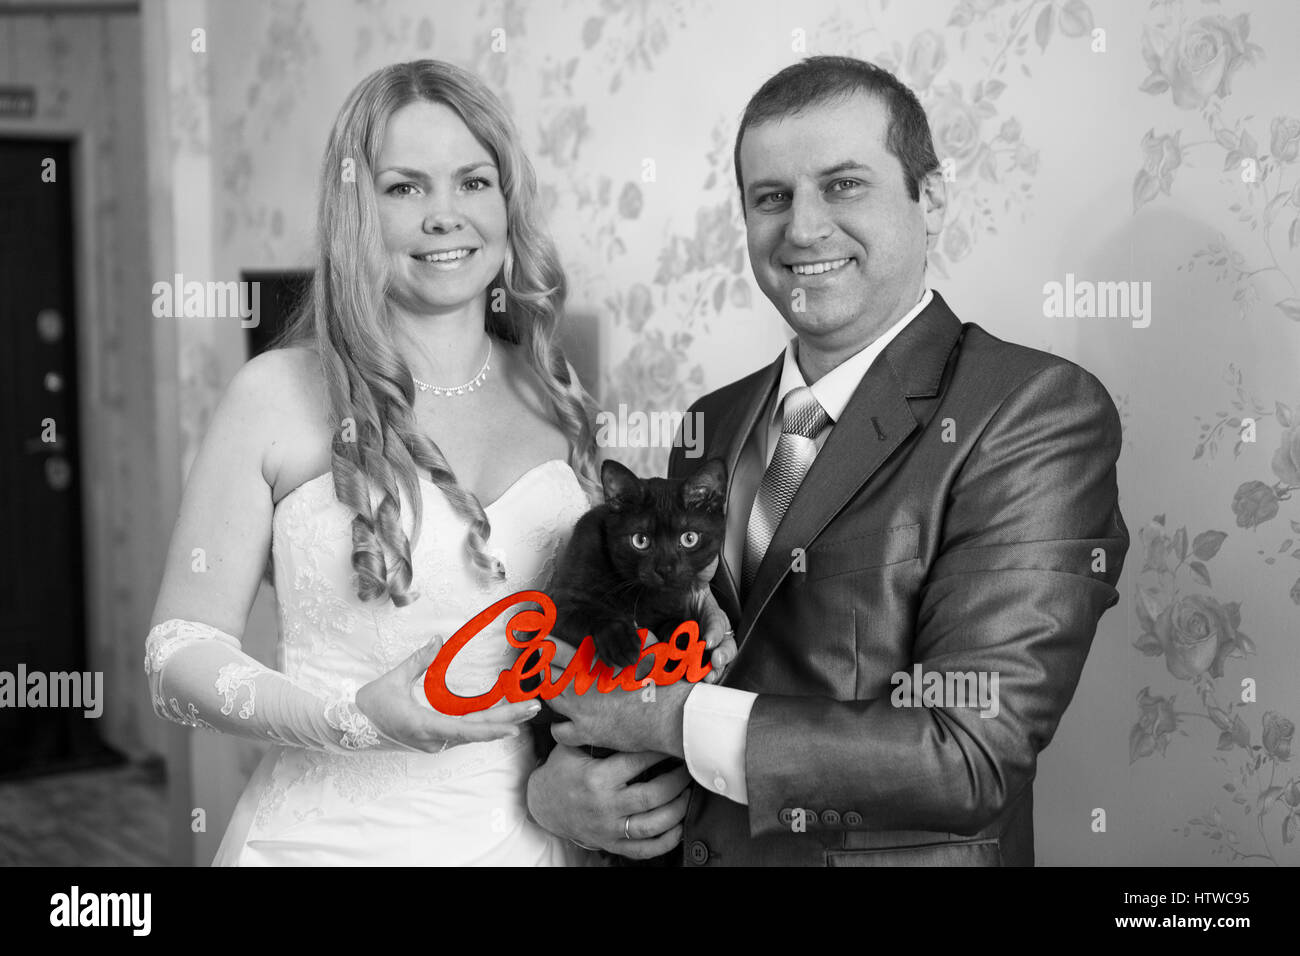 Felice e sorridente Caucasian giovane azienda red parola famiglia in russo in mani e gatto nero, immagine in scala di grigi Foto Stock